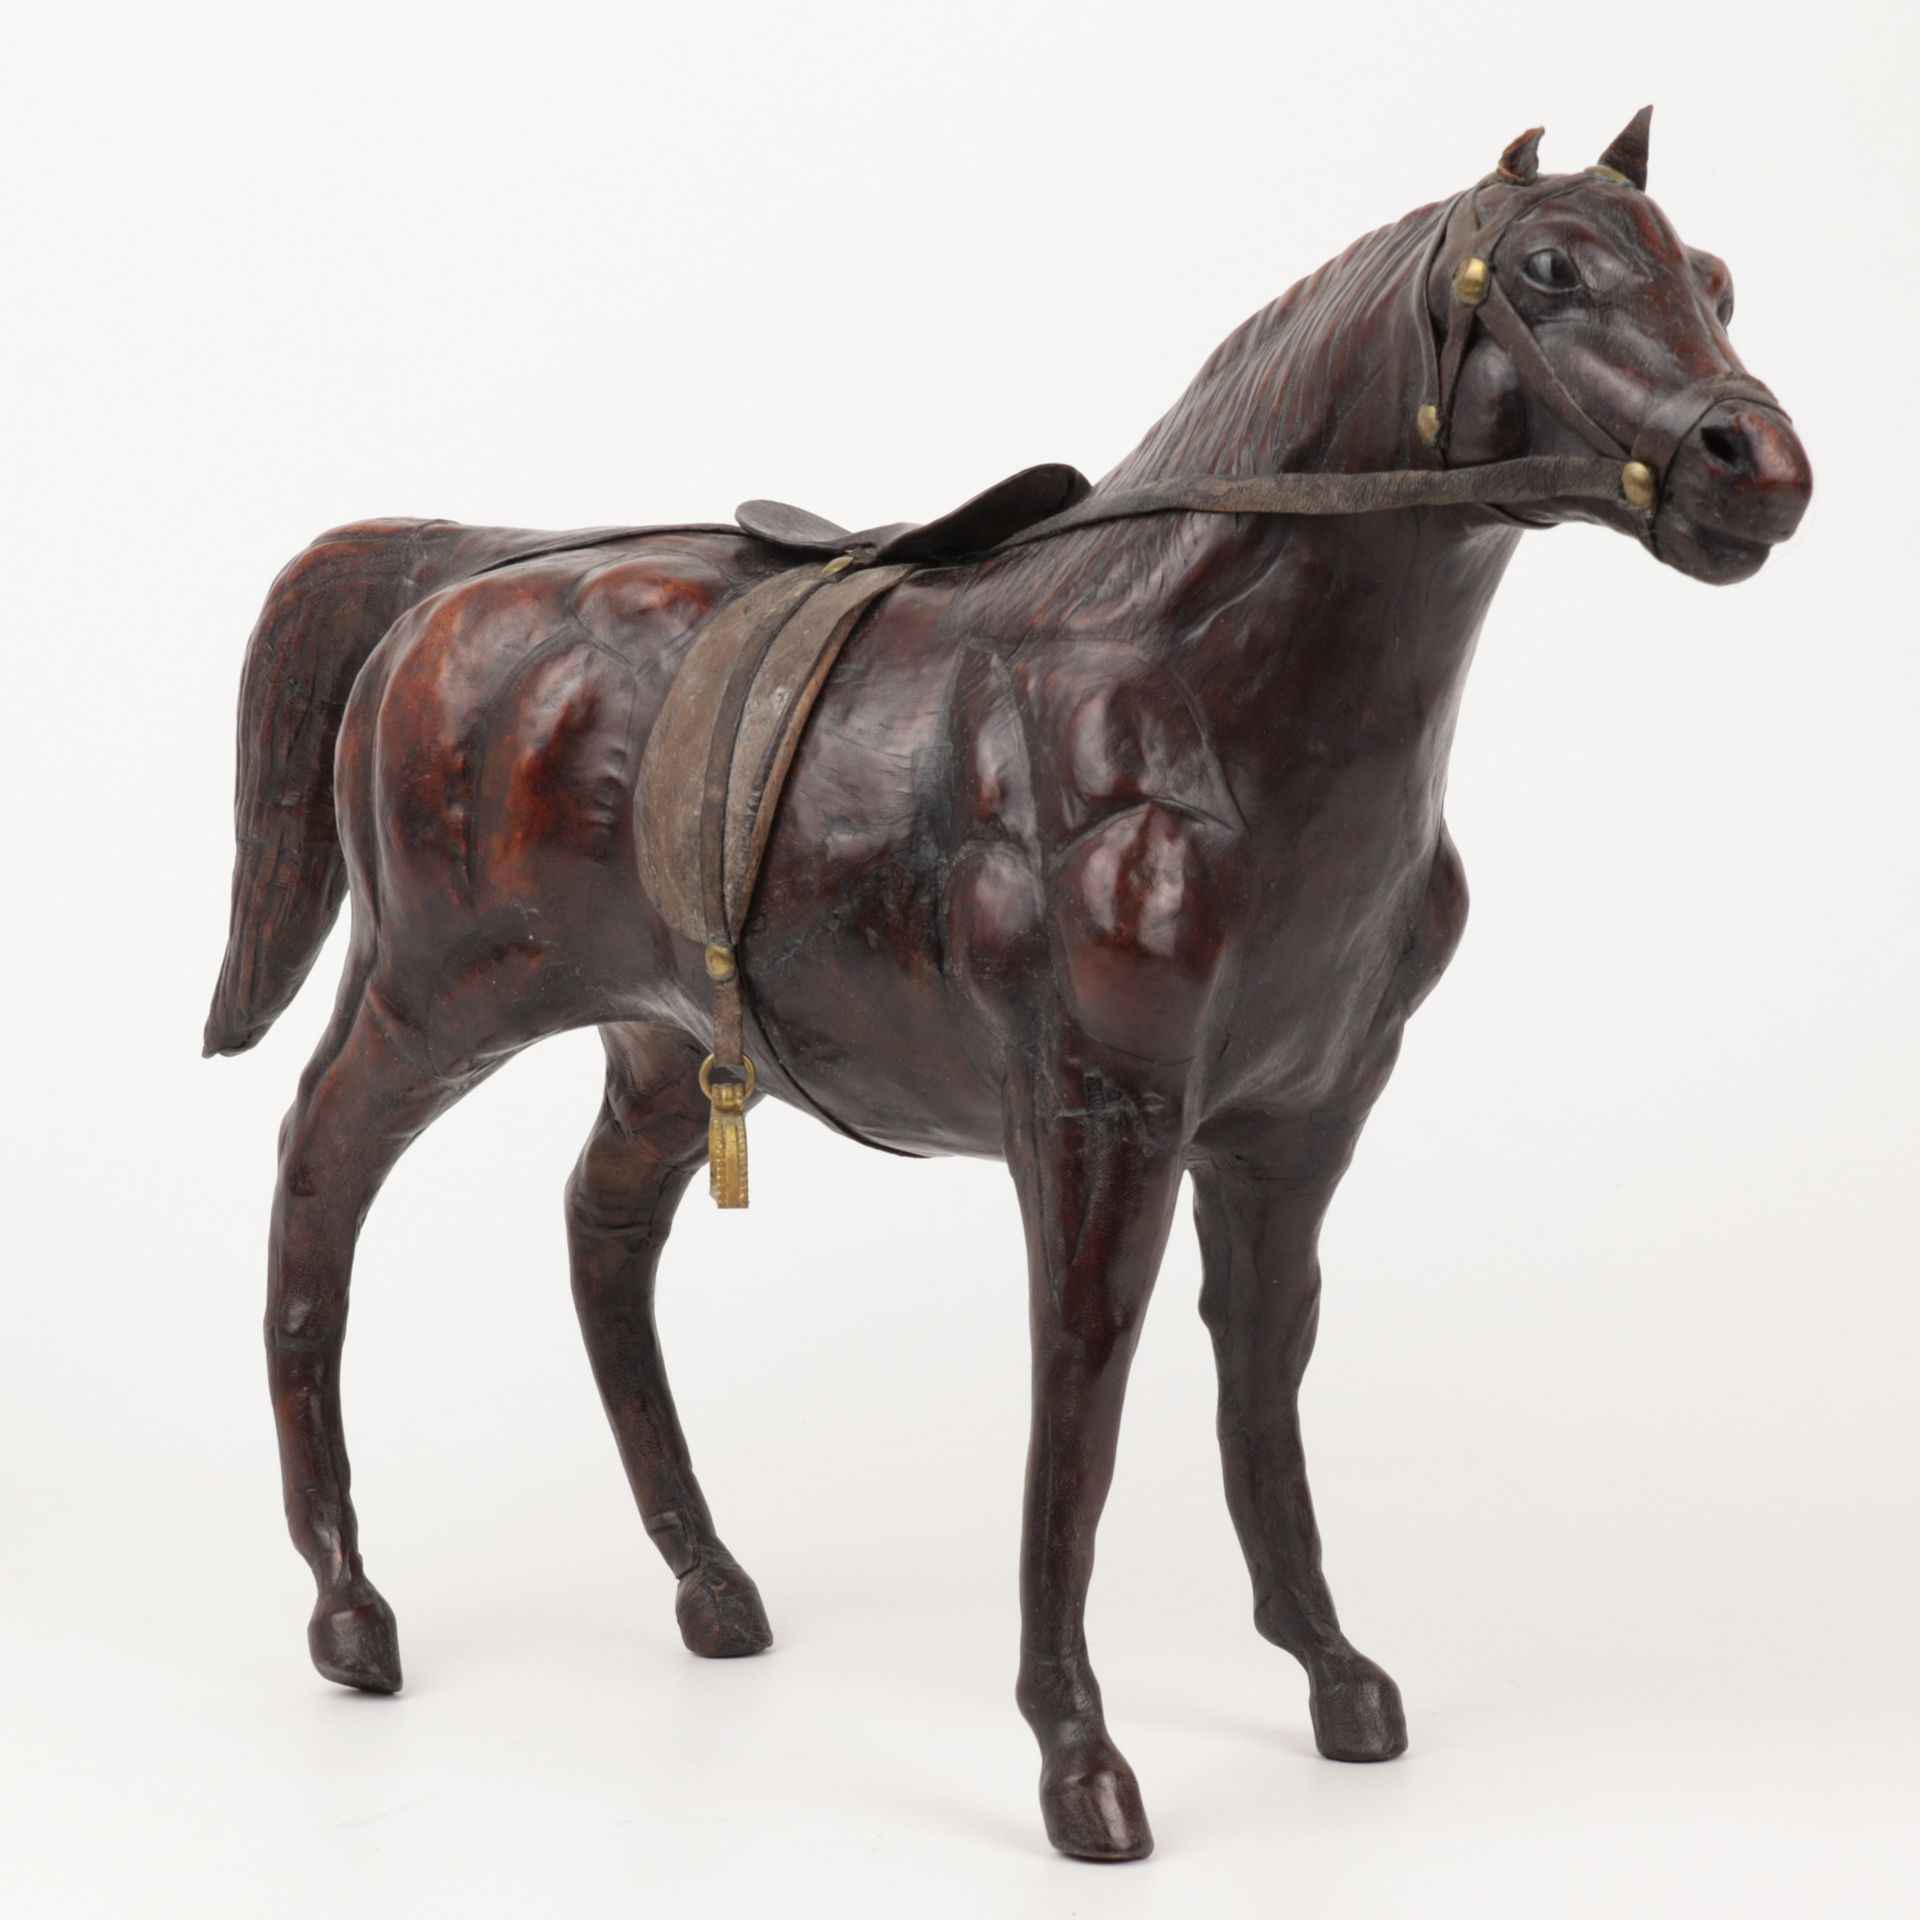 Lederpferd wohl um 1900, Skulptur eines Pferdes mit Leder überzogen, naturalistisch u